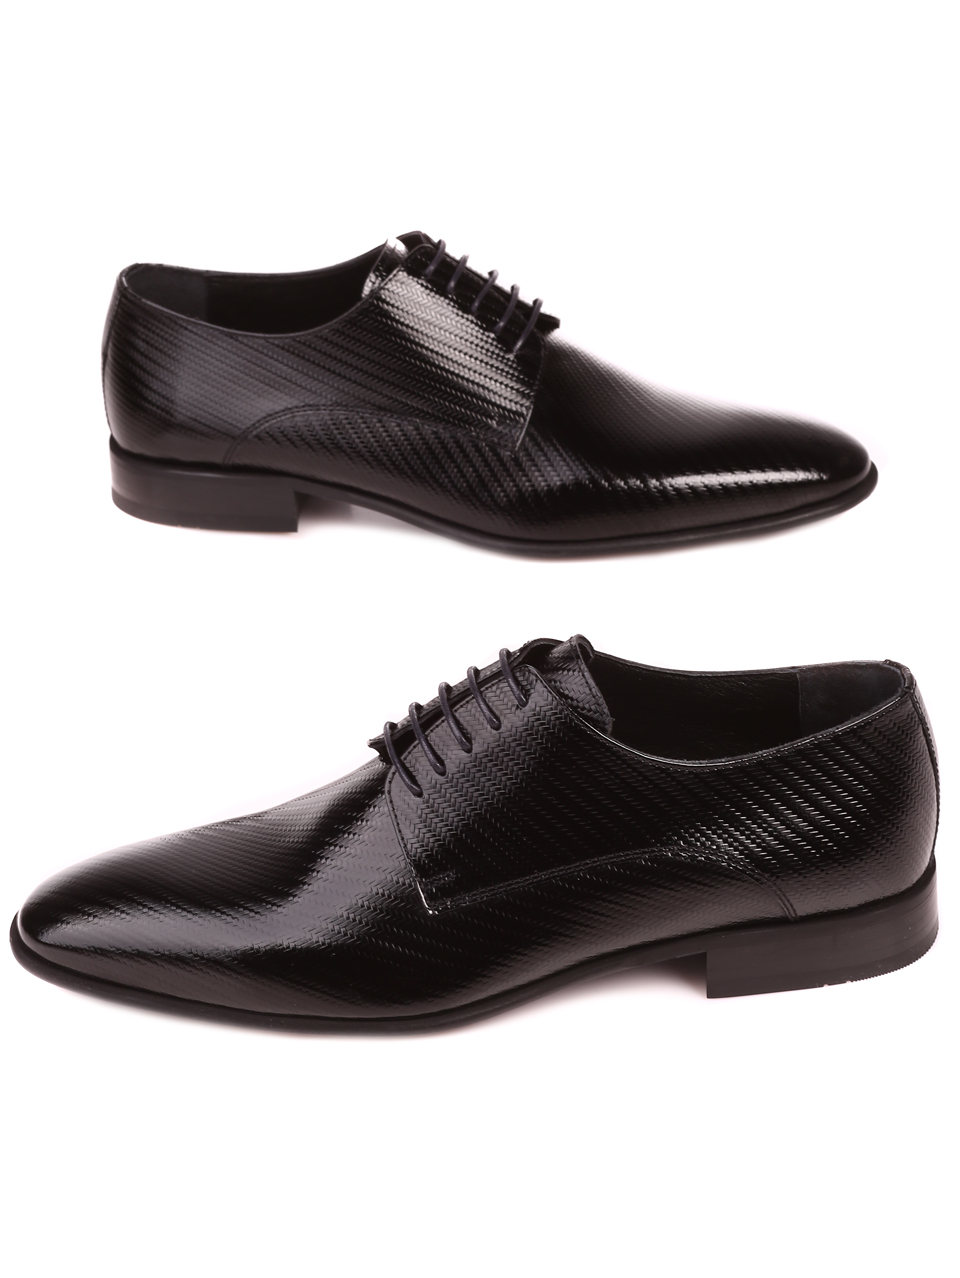 Елегантни мъжки обувки от естествен лак 7AT-22289 black